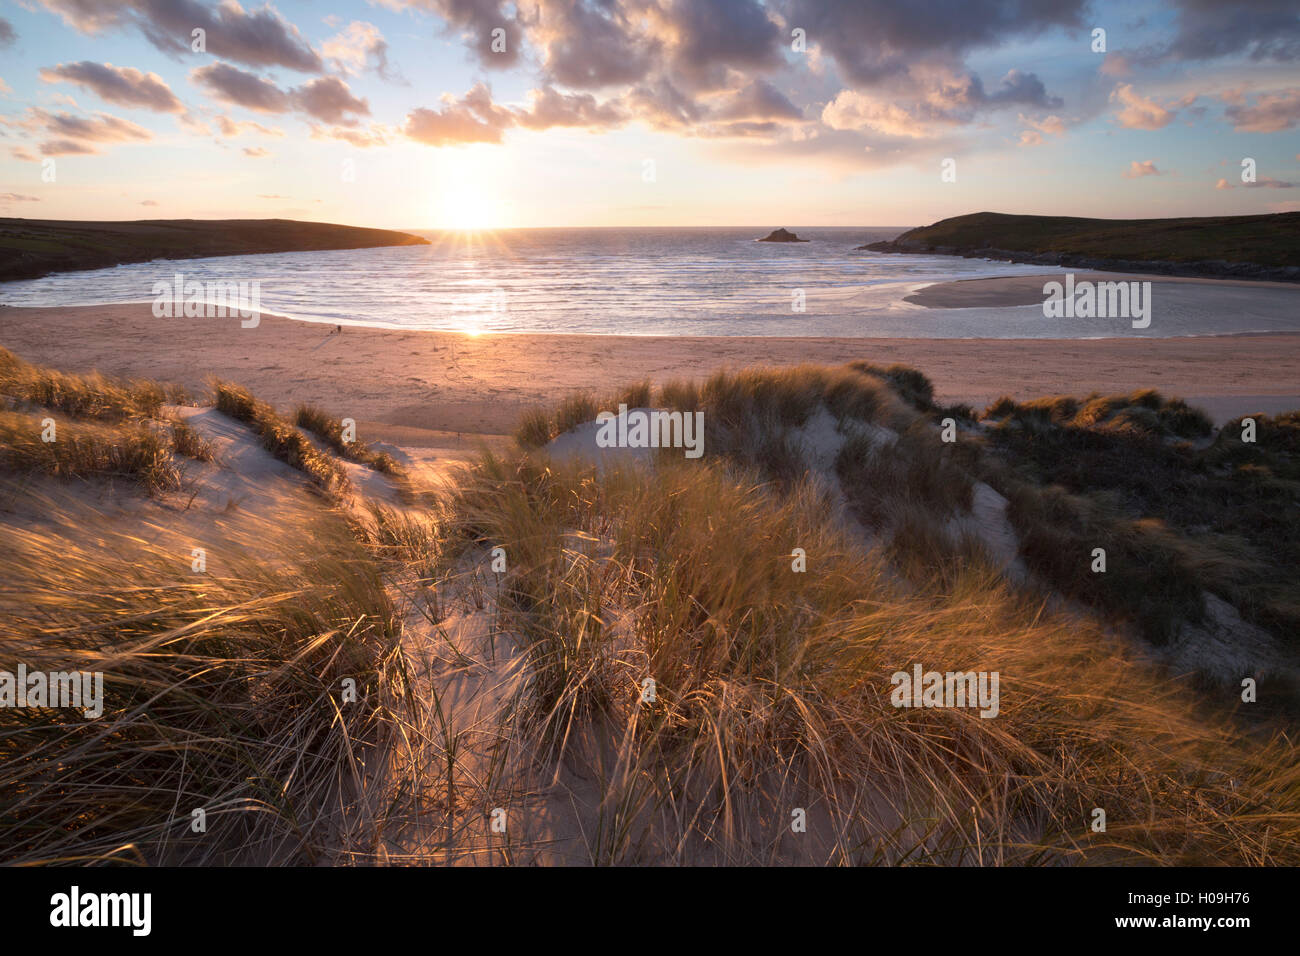 Gerippt, Sand und Dünen bei Sonnenuntergang, Crantock Beach Crantock, in der Nähe von Newquay, Cornwall, England, Vereinigtes Königreich, Europa Stockfoto